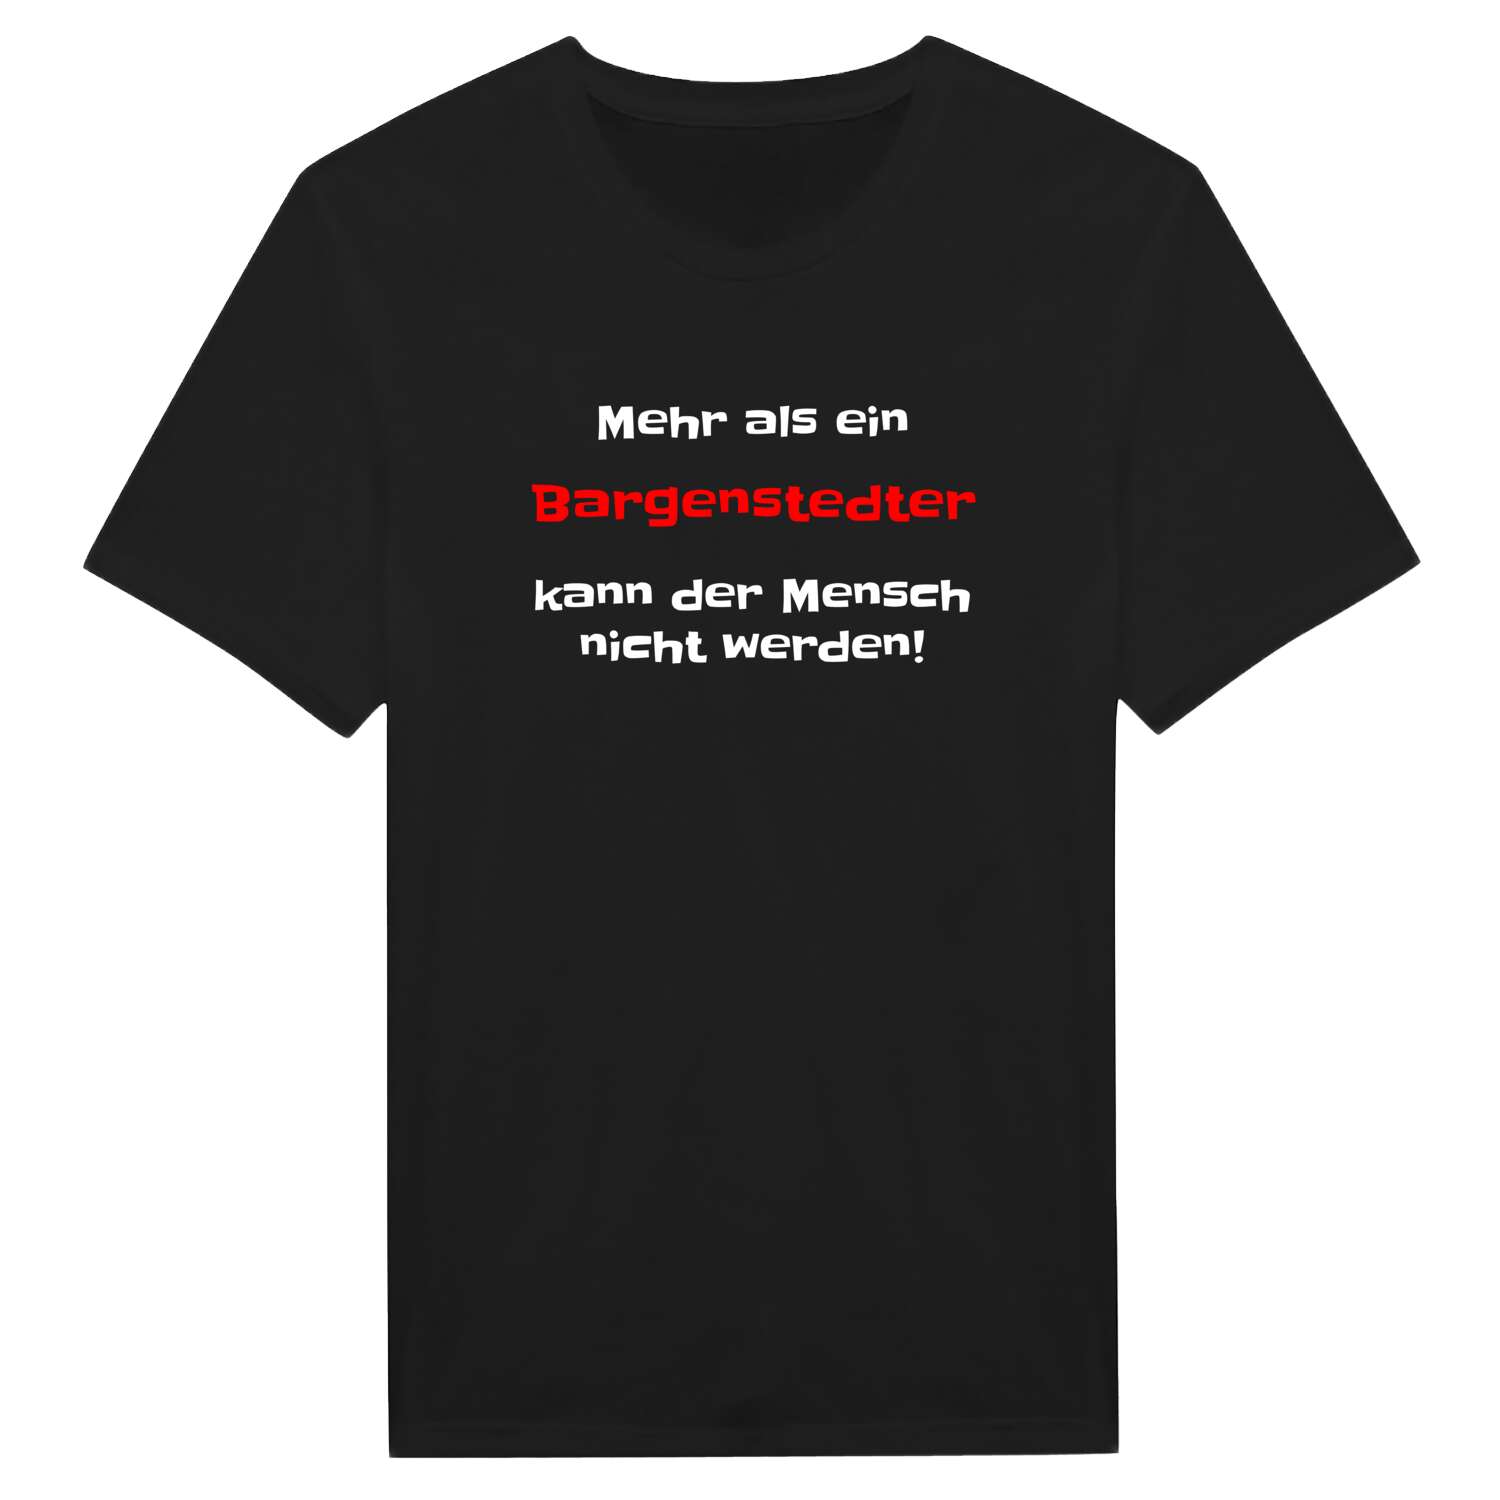 Bargenstedt T-Shirt »Mehr als ein«